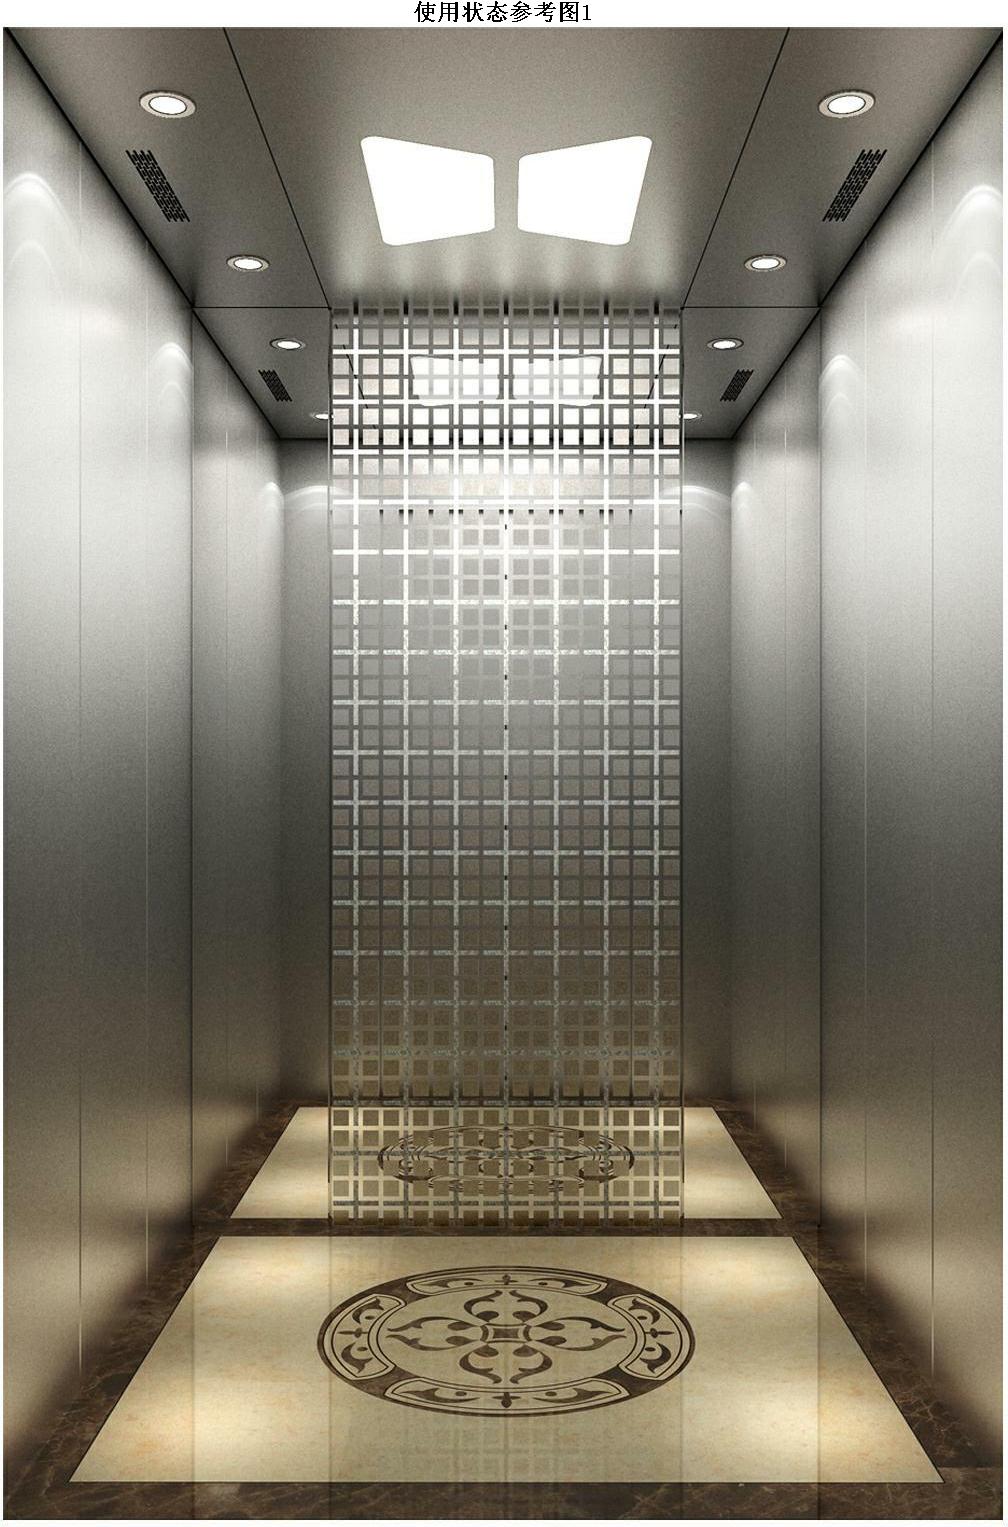 天津电梯内部装潢 电梯翻新设计